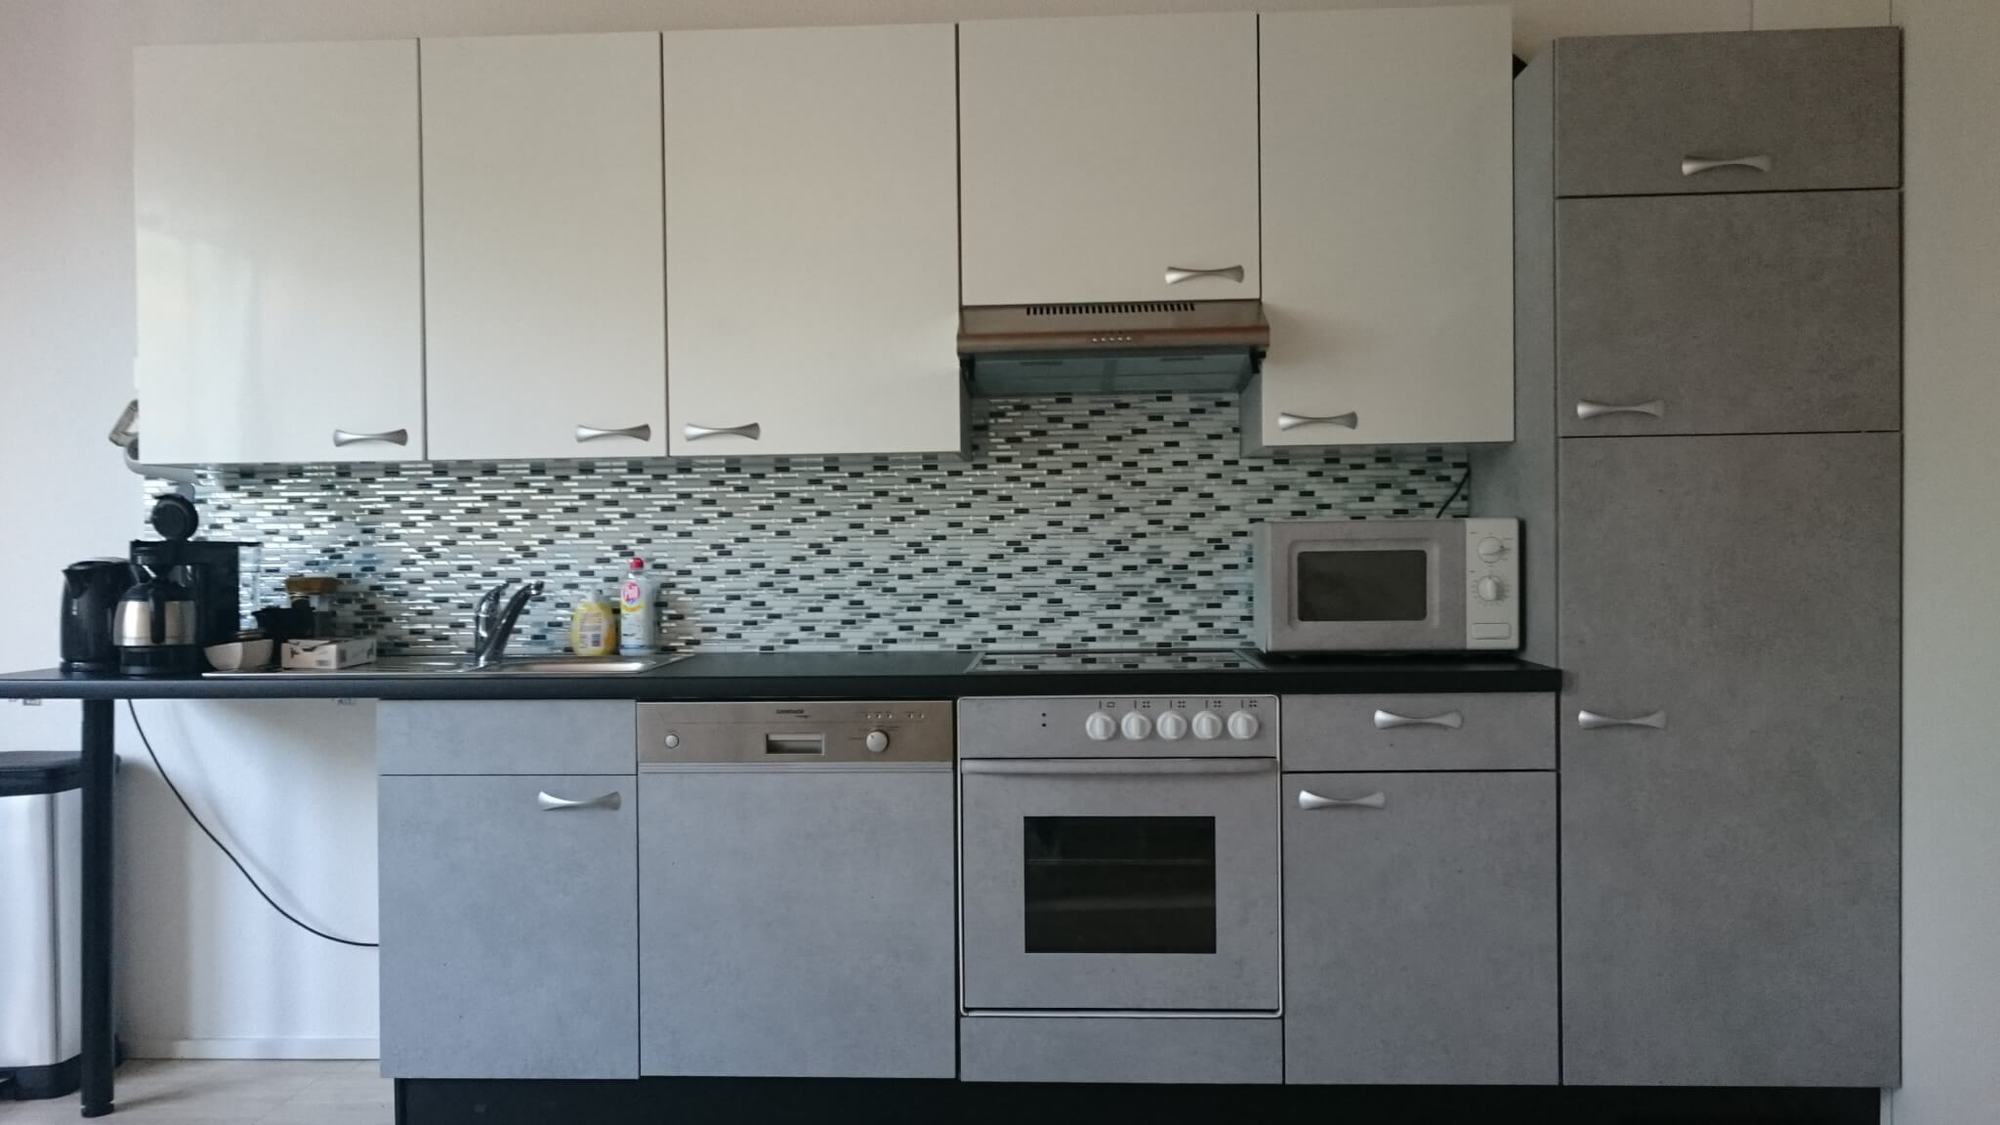 Tipps zur Raumgestaltung in der Küche mit Farbe und Akzente moderne Optik in Beton, Glanz Weiß und Schwarz - nachher